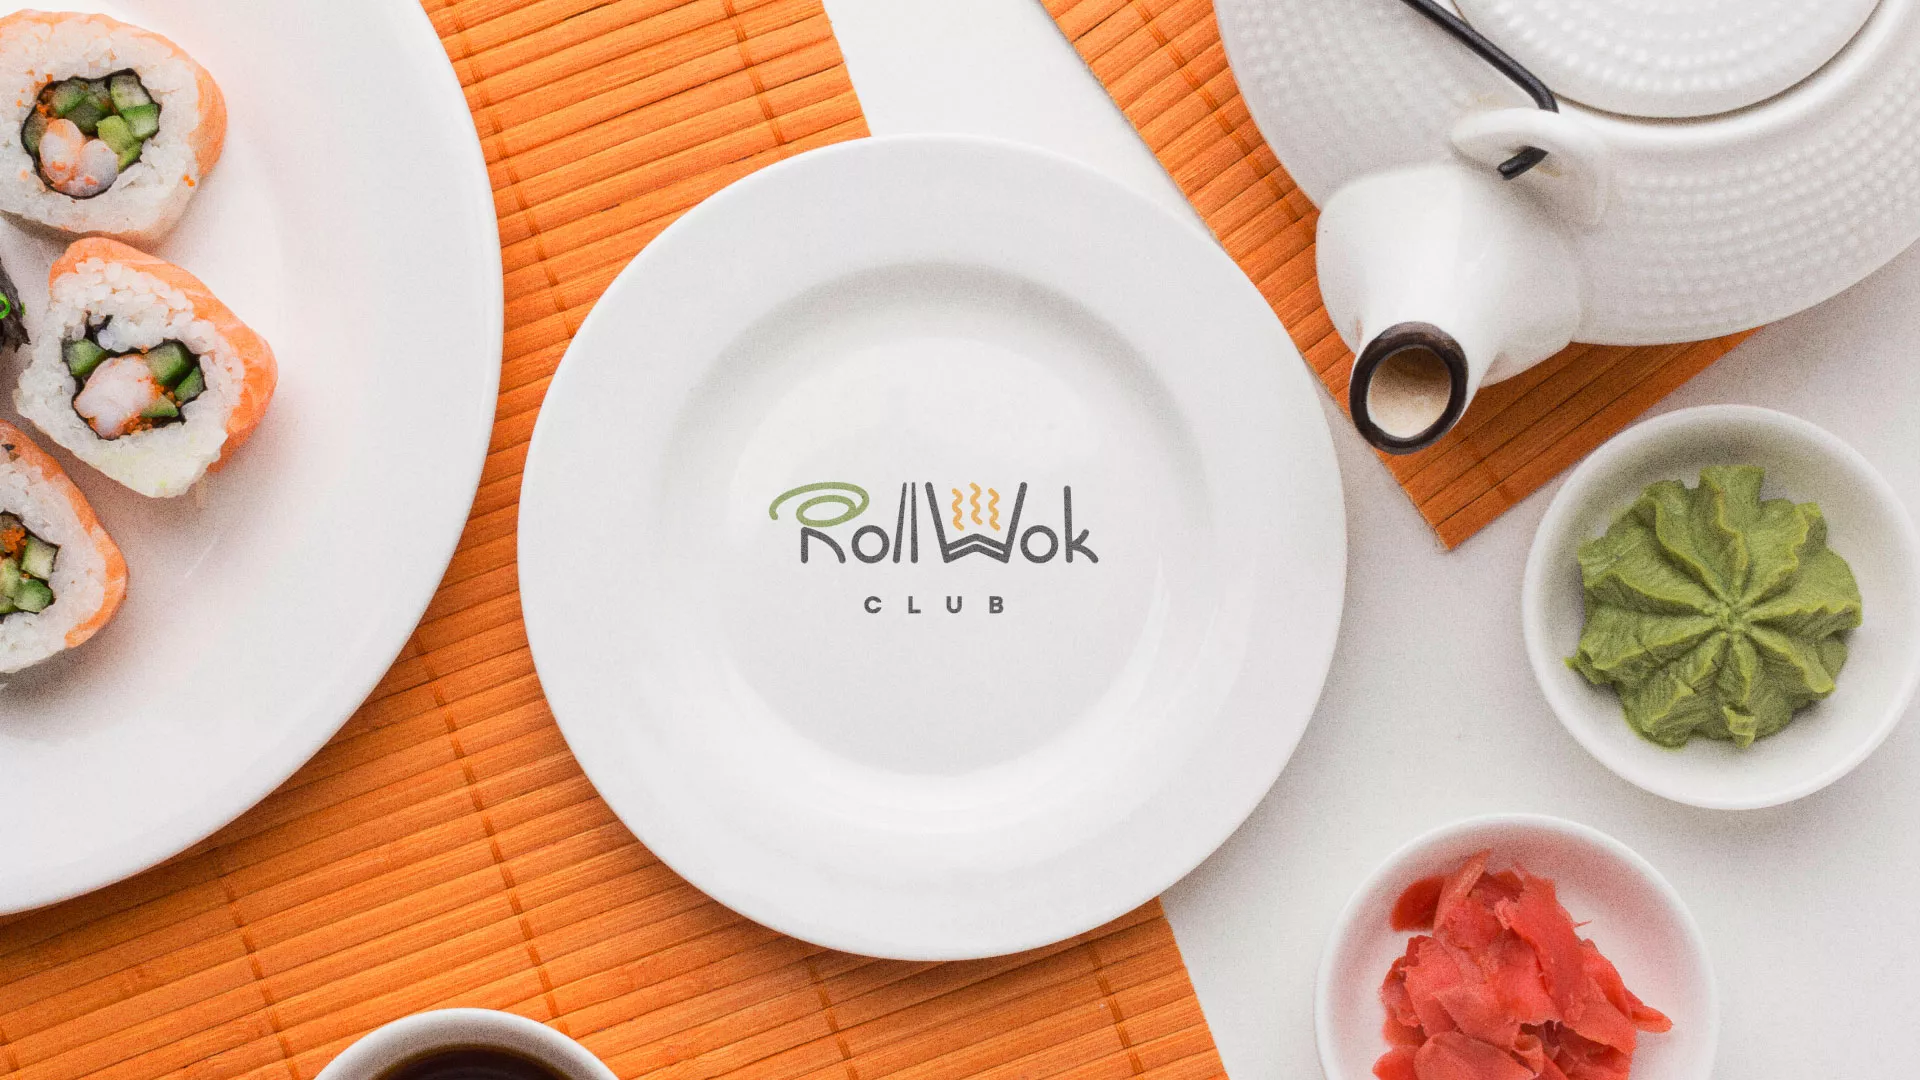 Разработка логотипа и фирменного стиля суши-бара «Roll Wok Club» в Алатыре